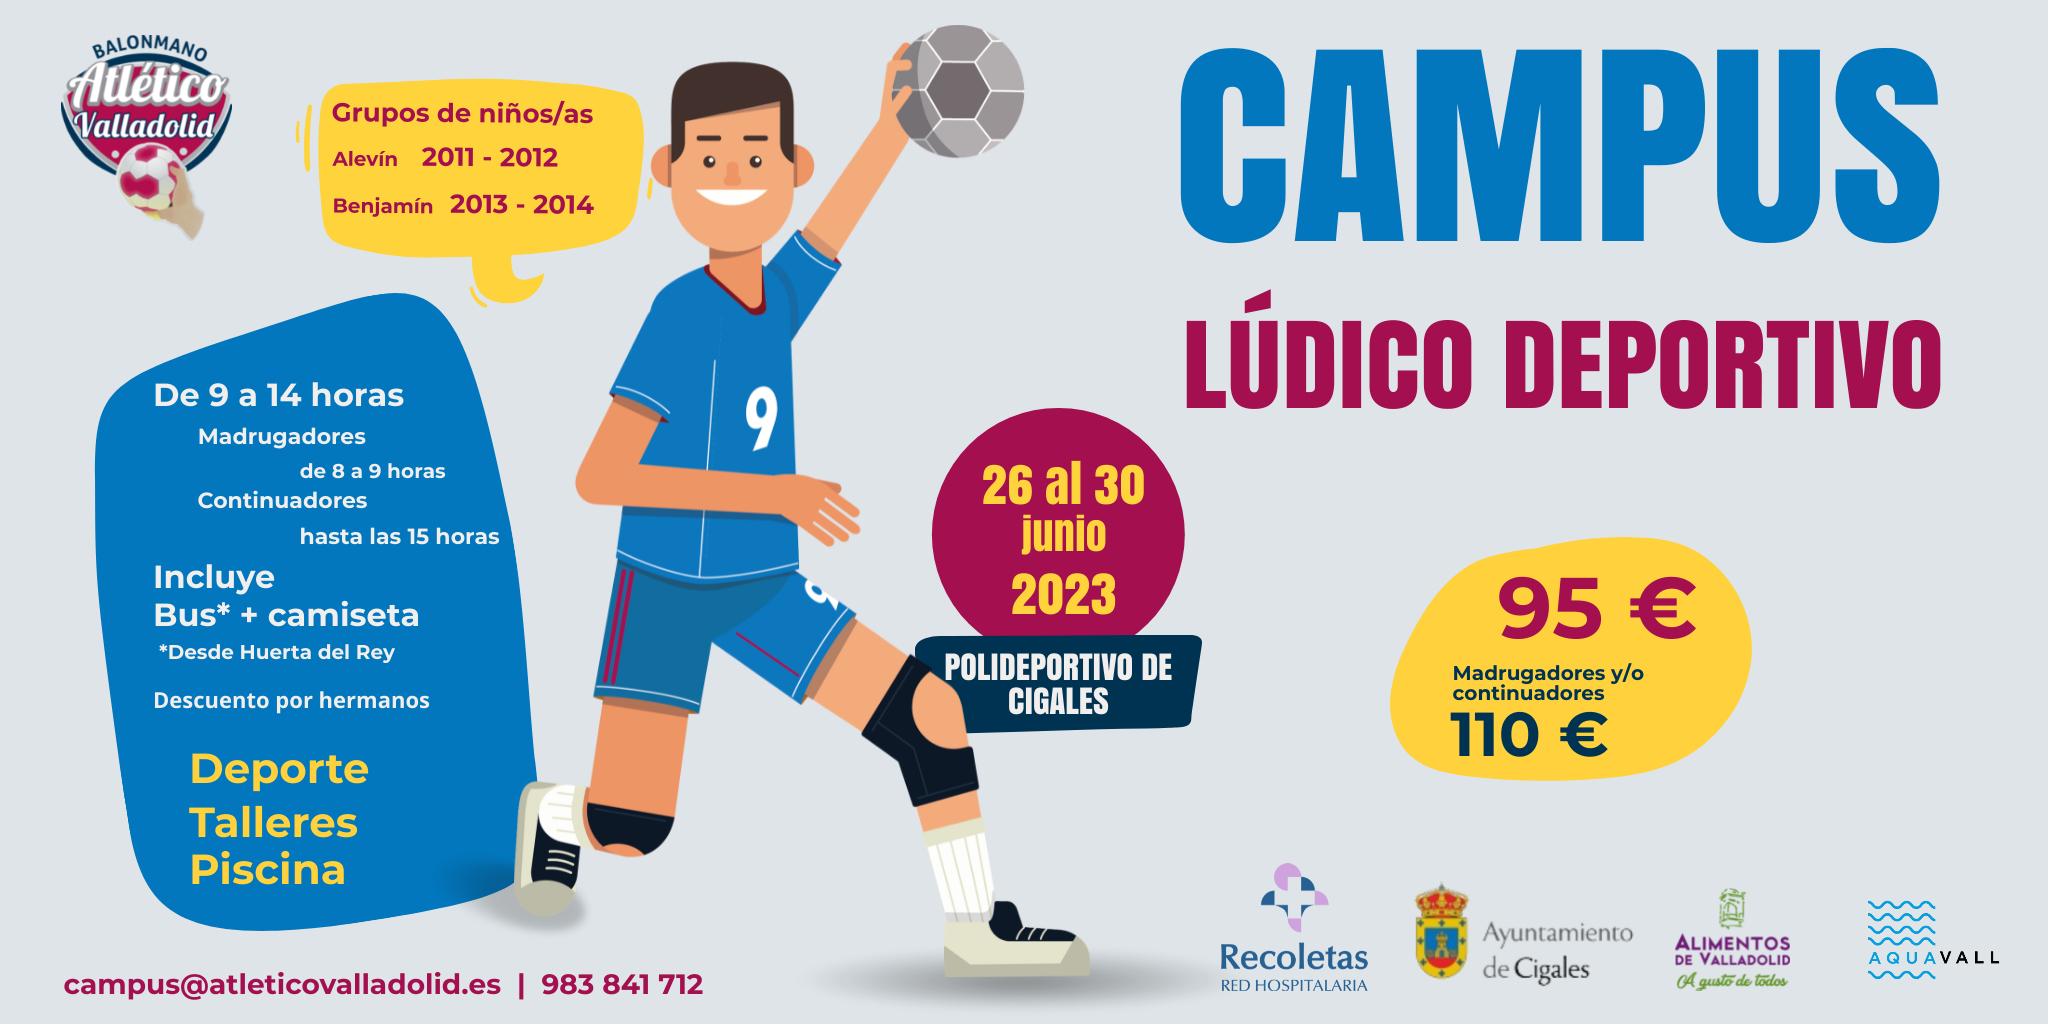 Continúa abierta la inscripción para el Campus Lúdico Deportivo del Recoletas en Cigales | Galería 1 / 1